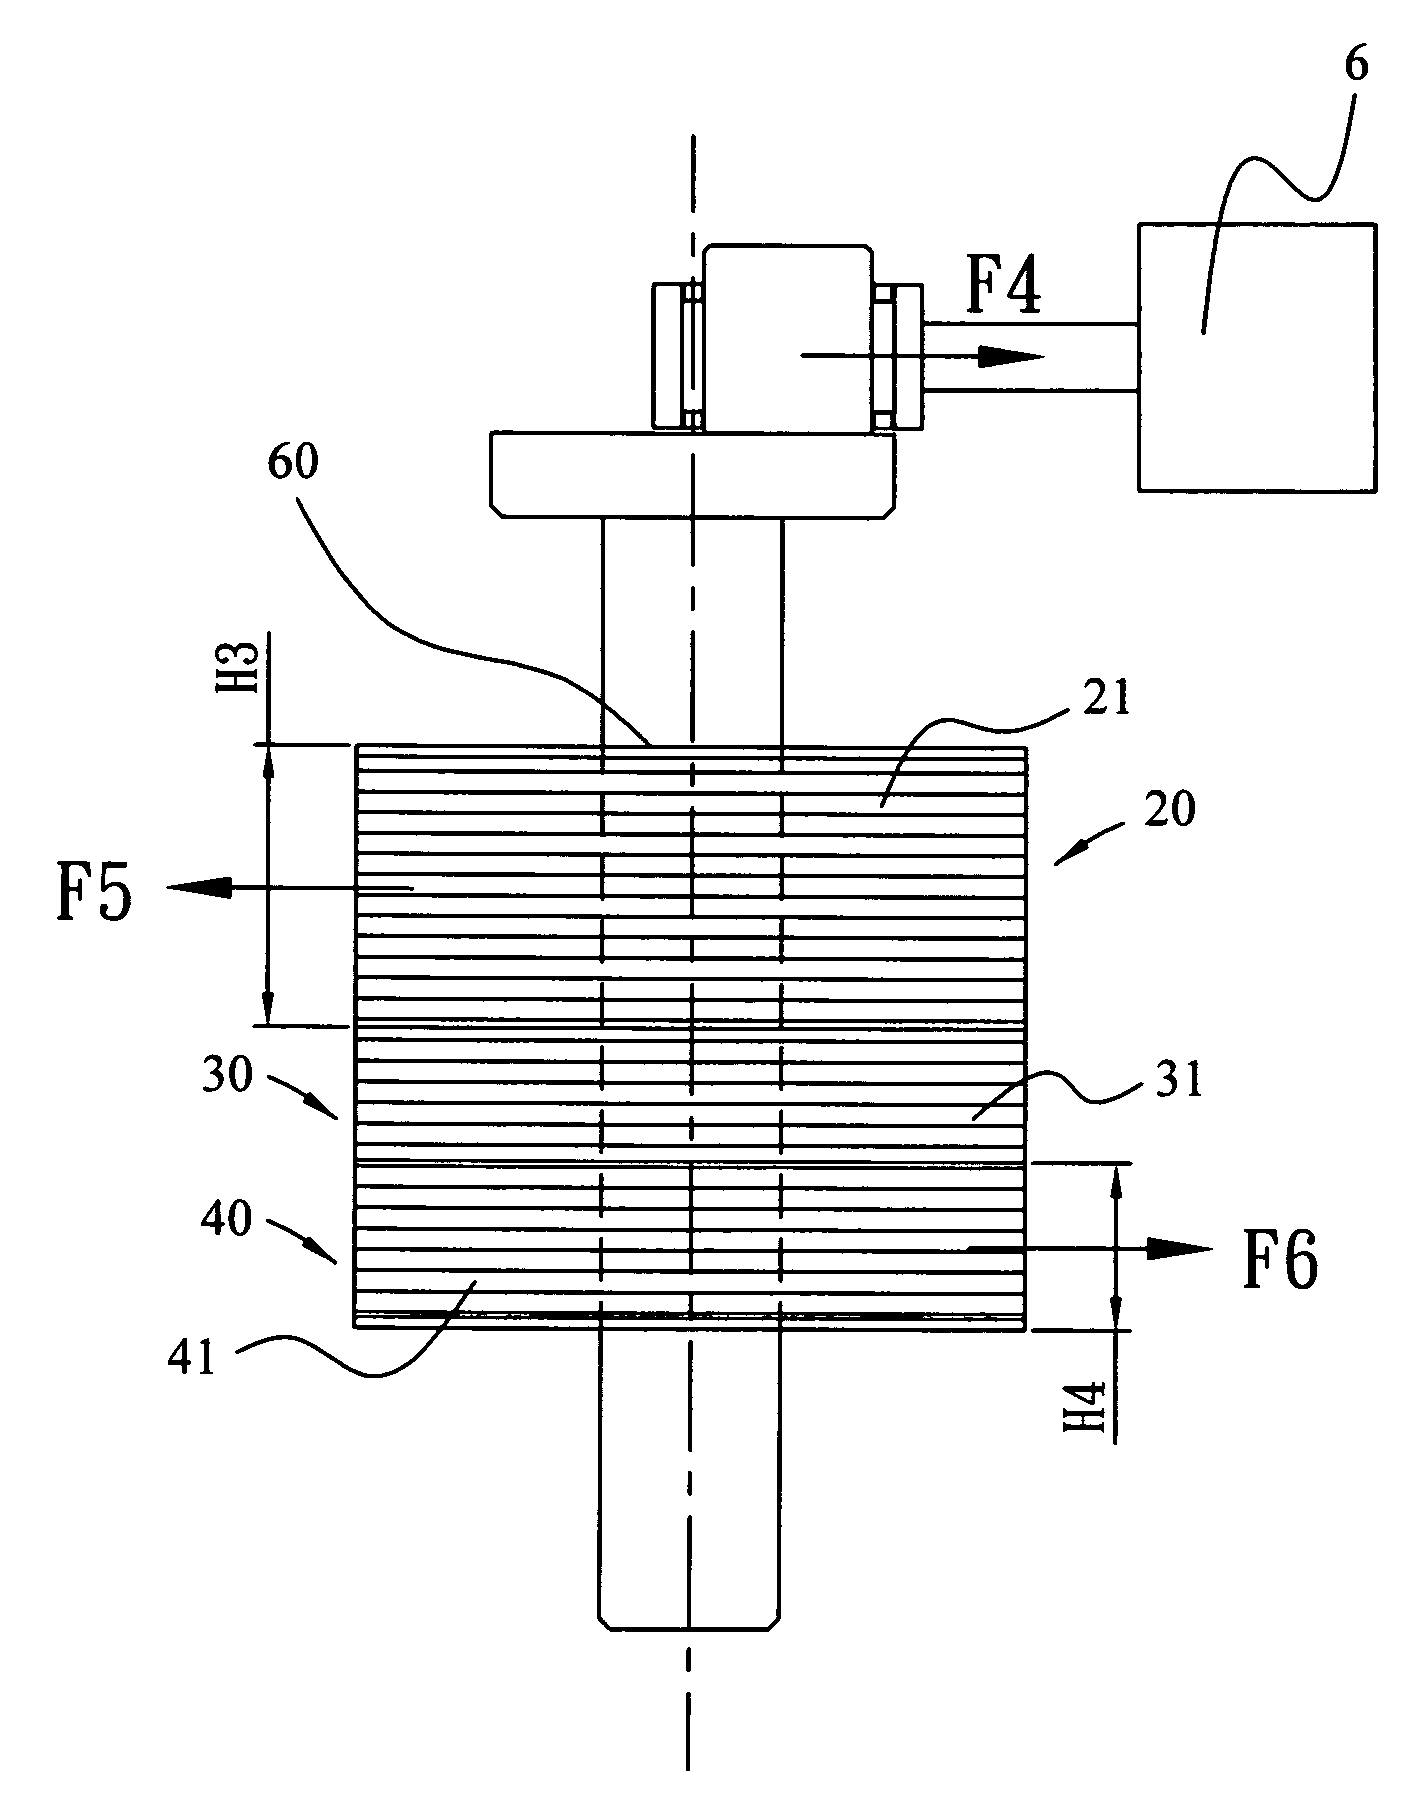 Motor mechanism of DC inverter-fed compressor